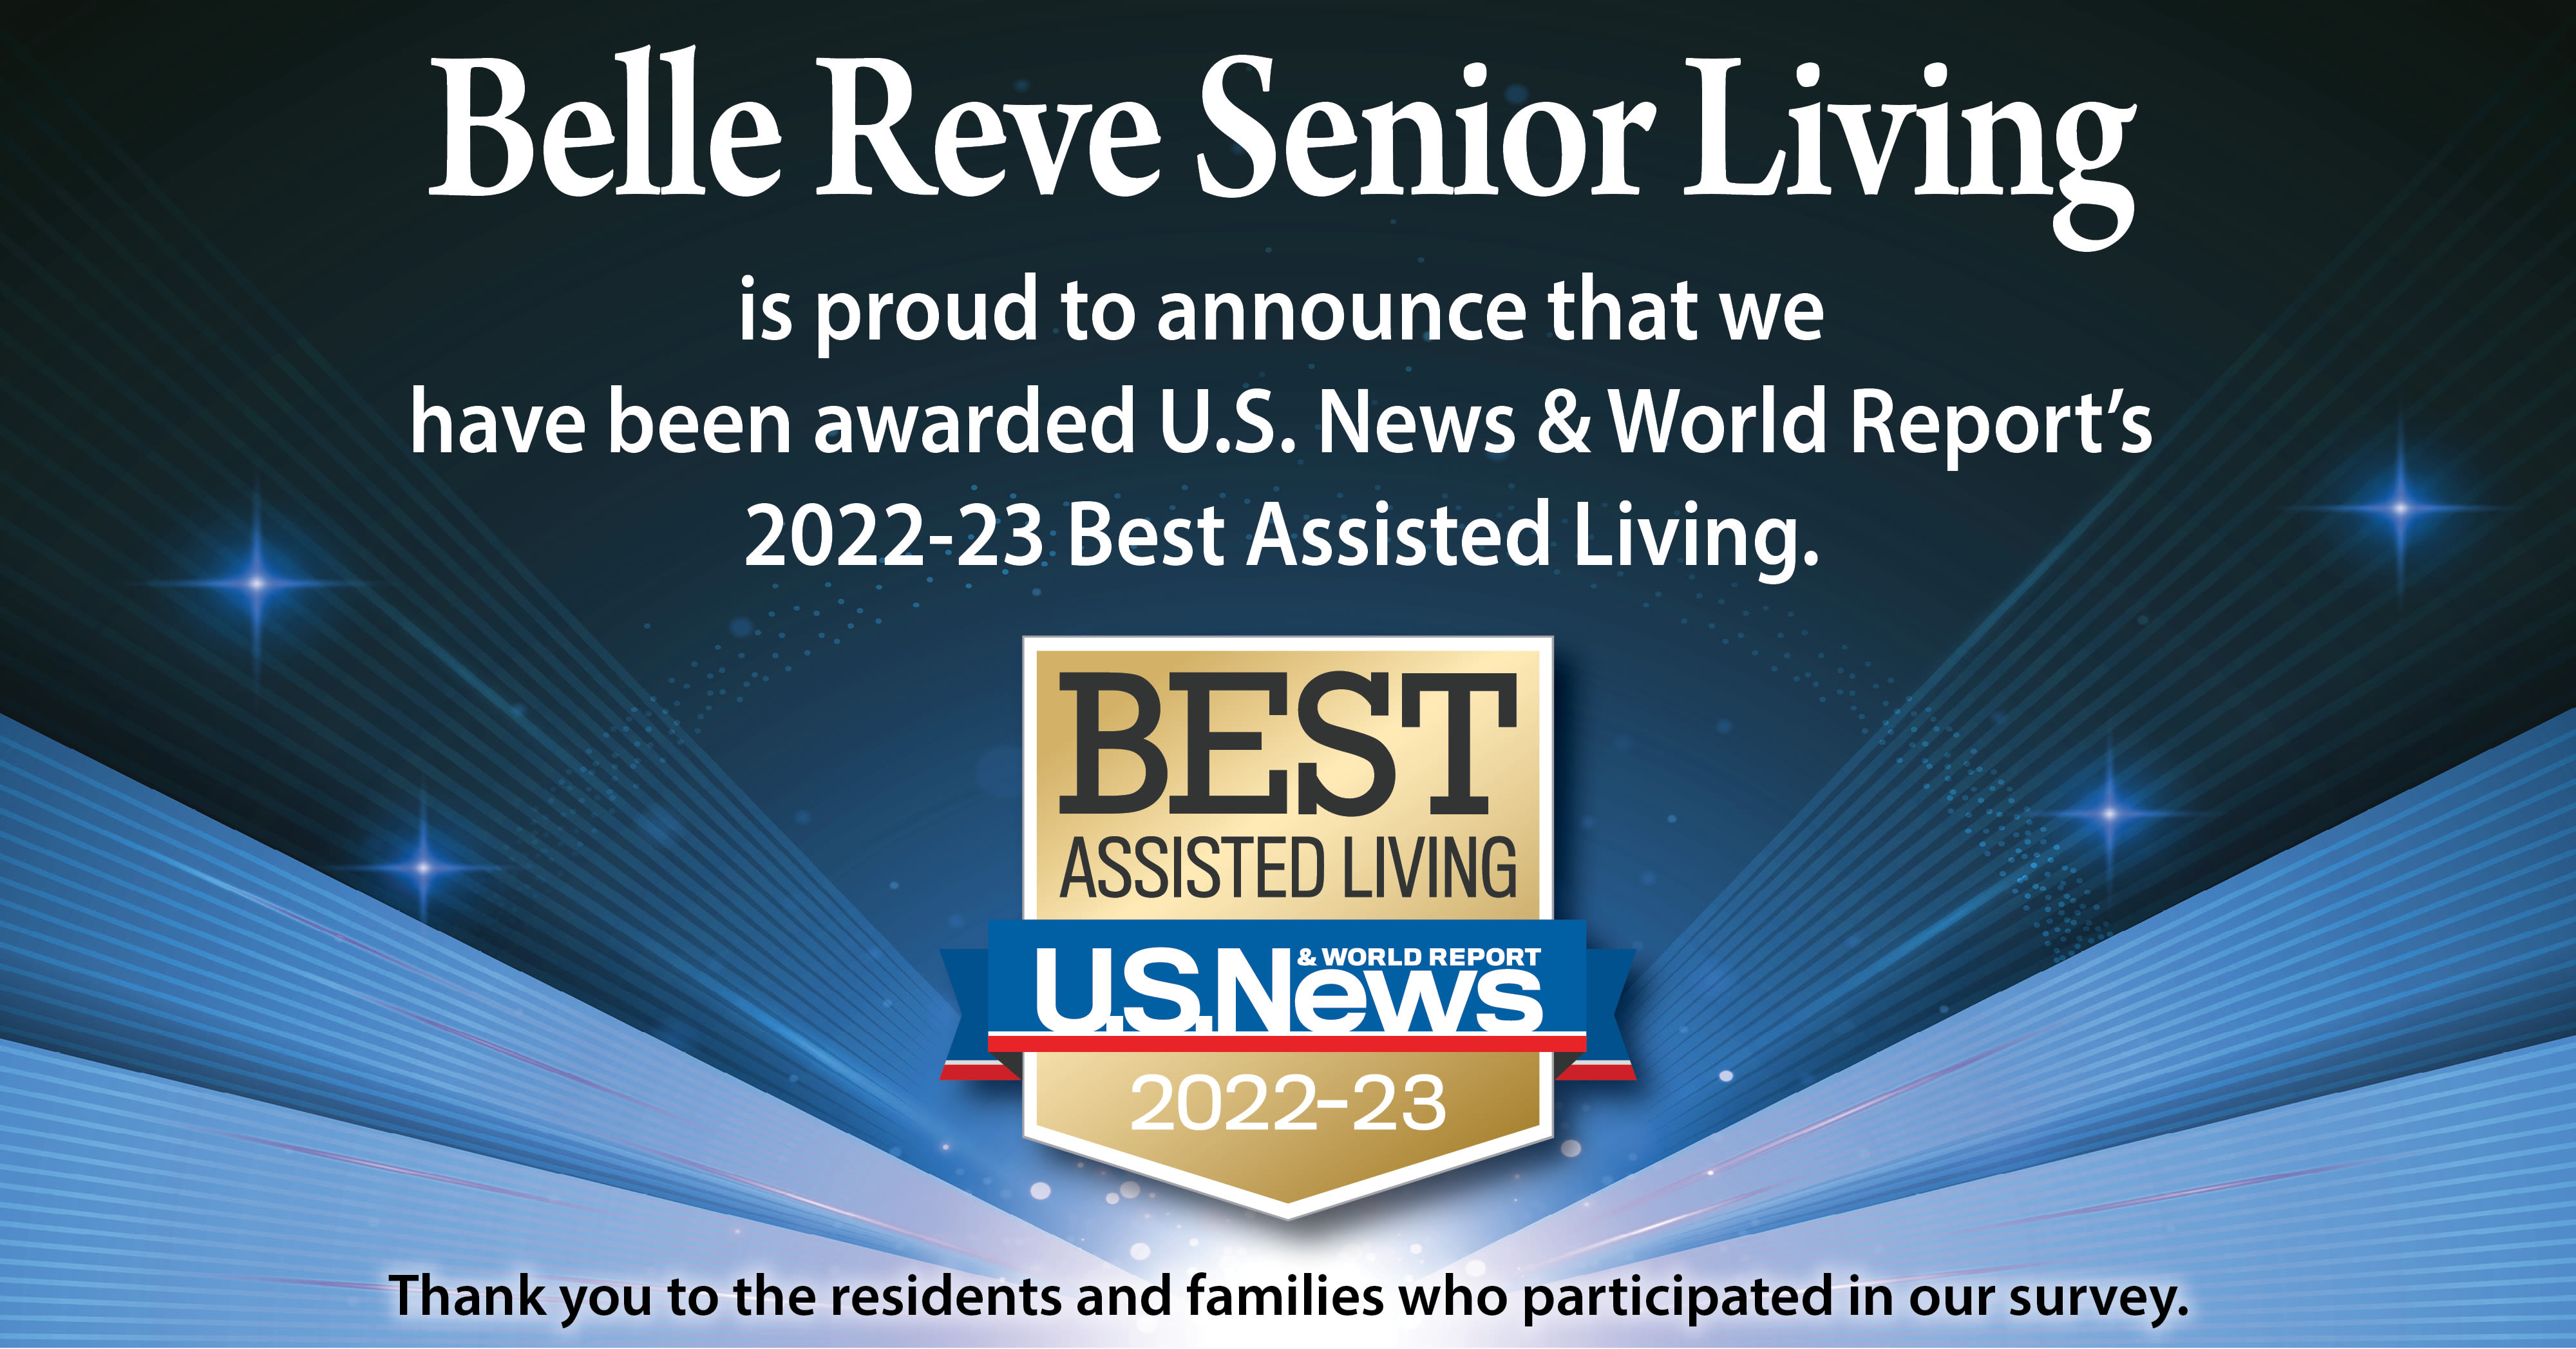 US News Best Senior Living Award 2022 for Belle Reve Senior Living